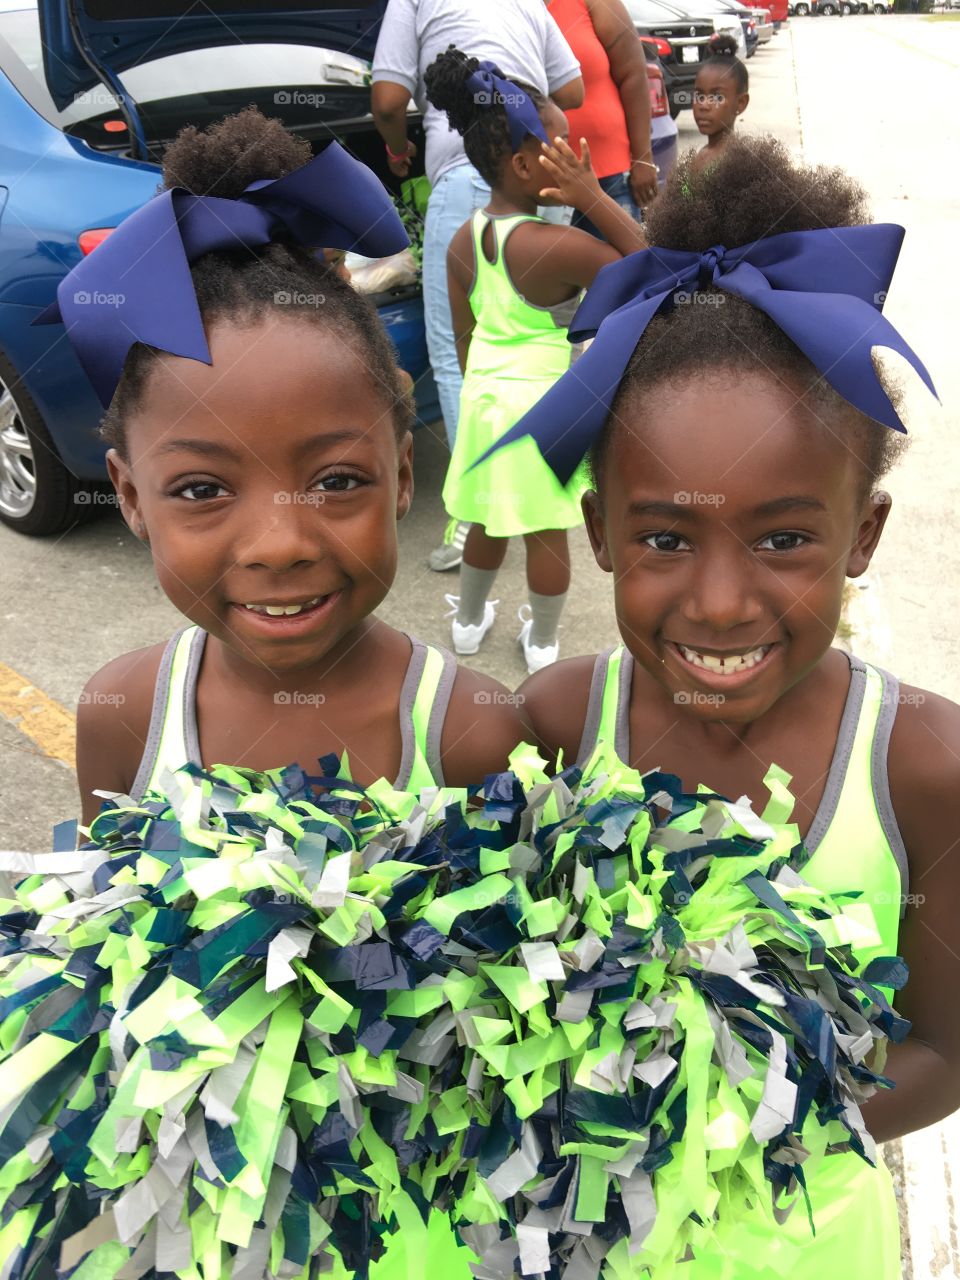 Emoni and Eniyha cheerleaders